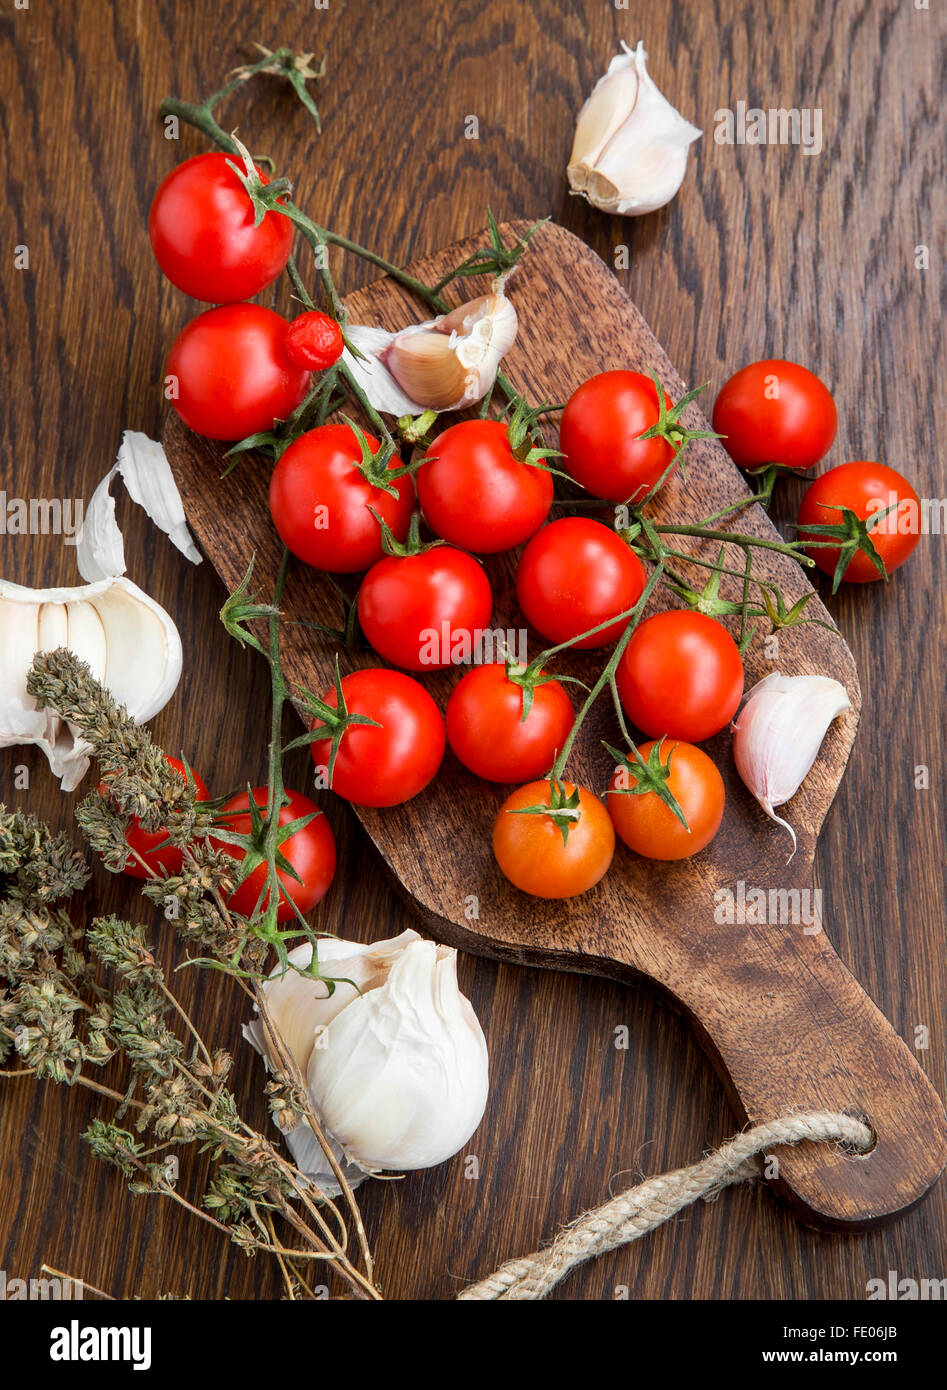 Organici di pomodorini con aglio e timo erba su una tavola di legno Foto Stock